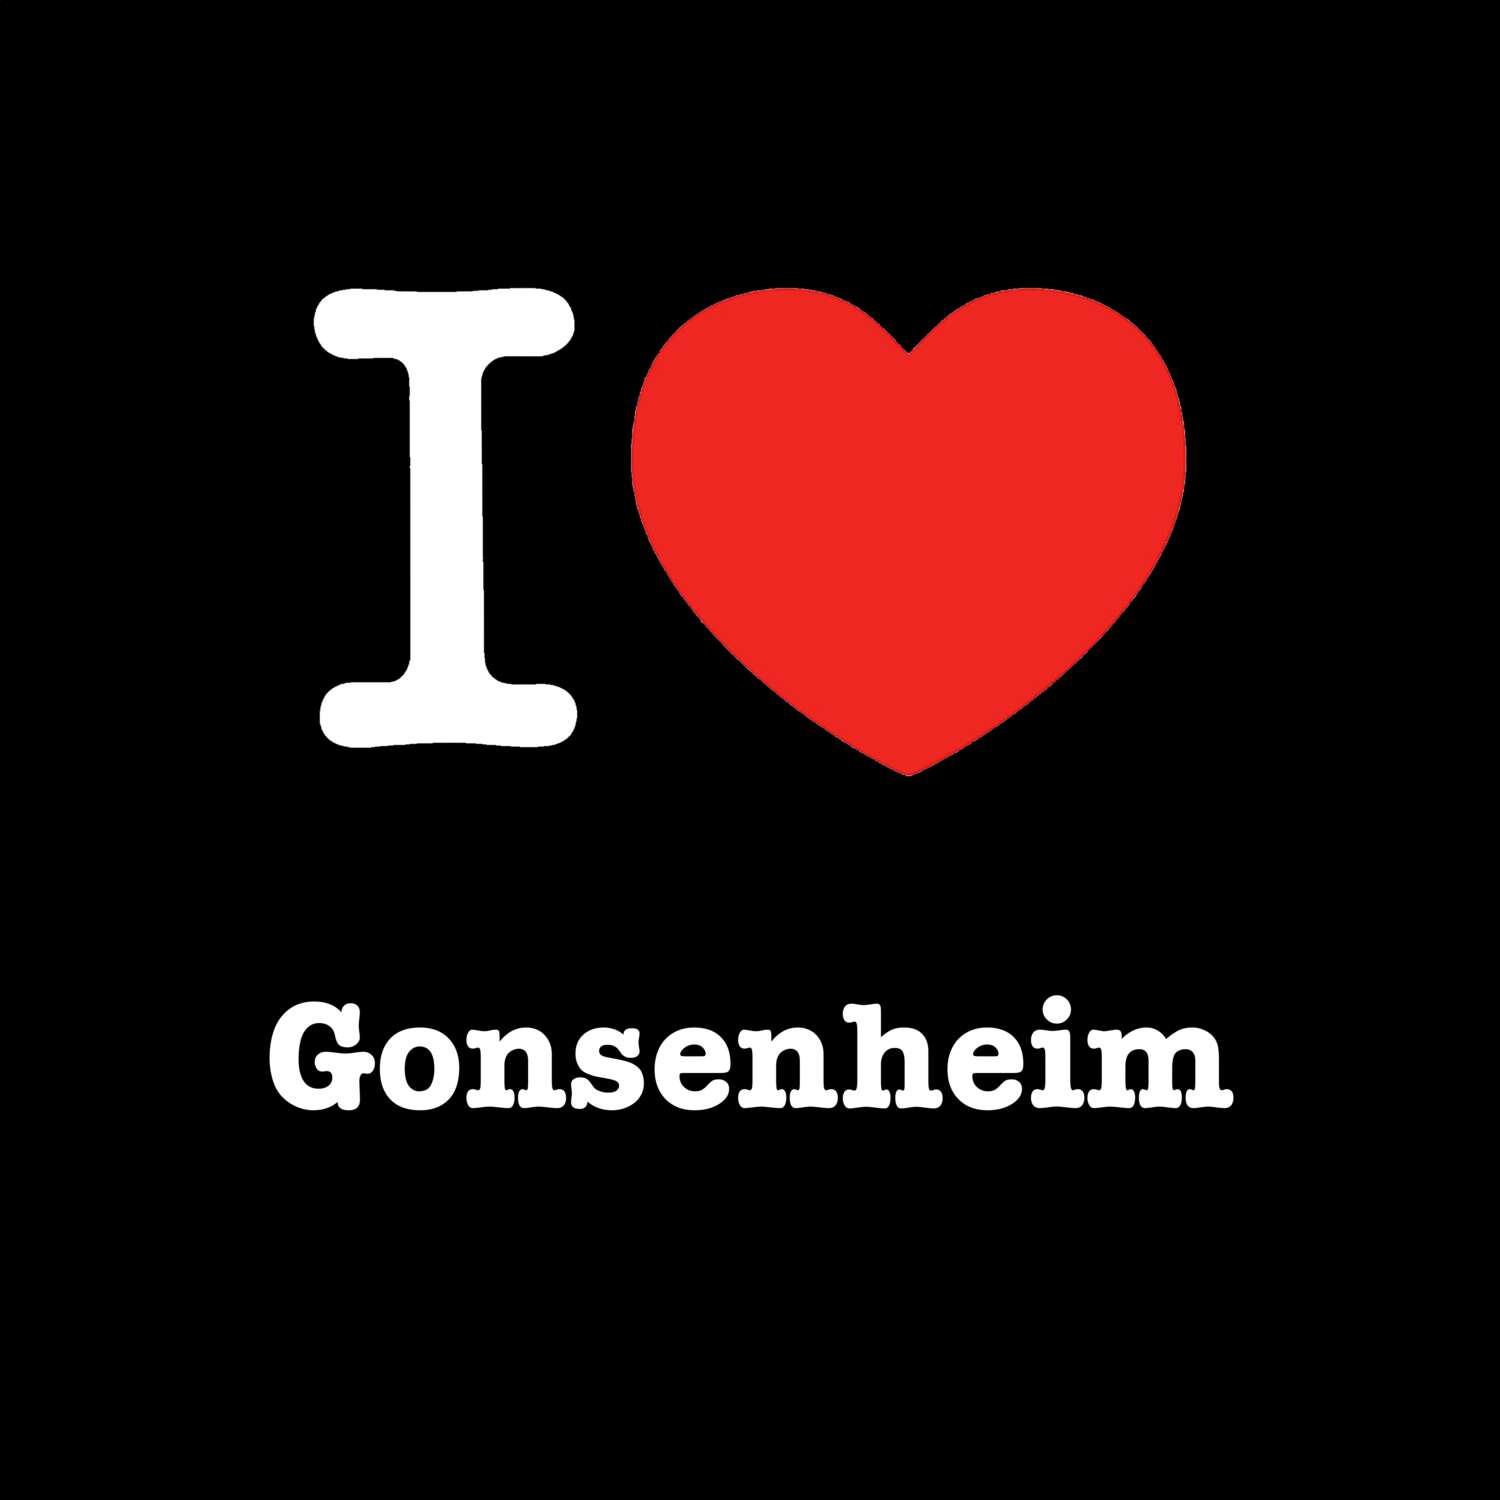 Gonsenheim T-Shirt »I love«